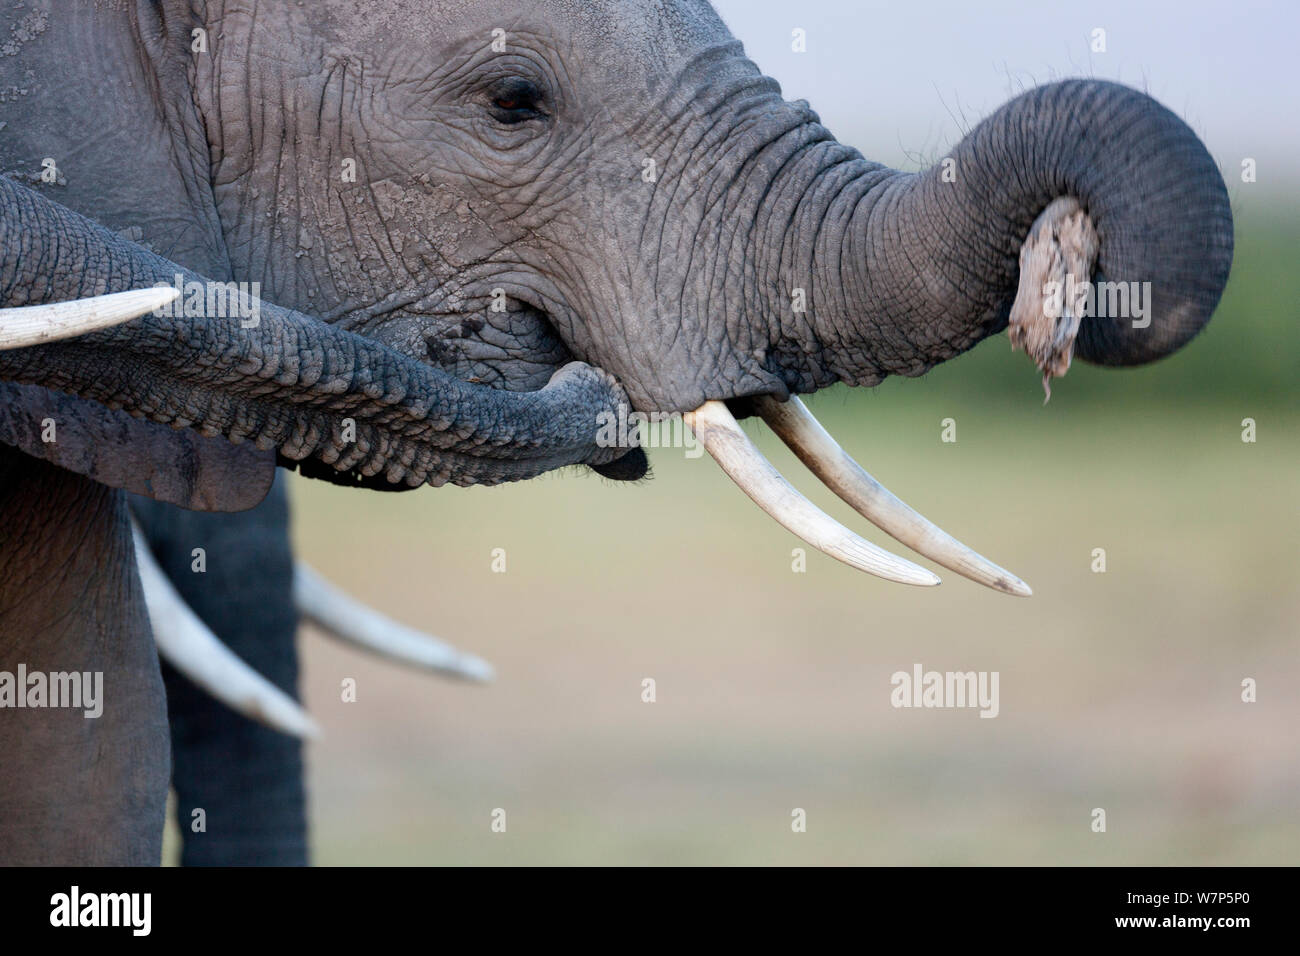 L'éléphant africain (Loxodonta africana) les mineurs de jouer. Le Parc national Amboseli, au Kenya. Seqeunce 2 sur 2. Banque D'Images